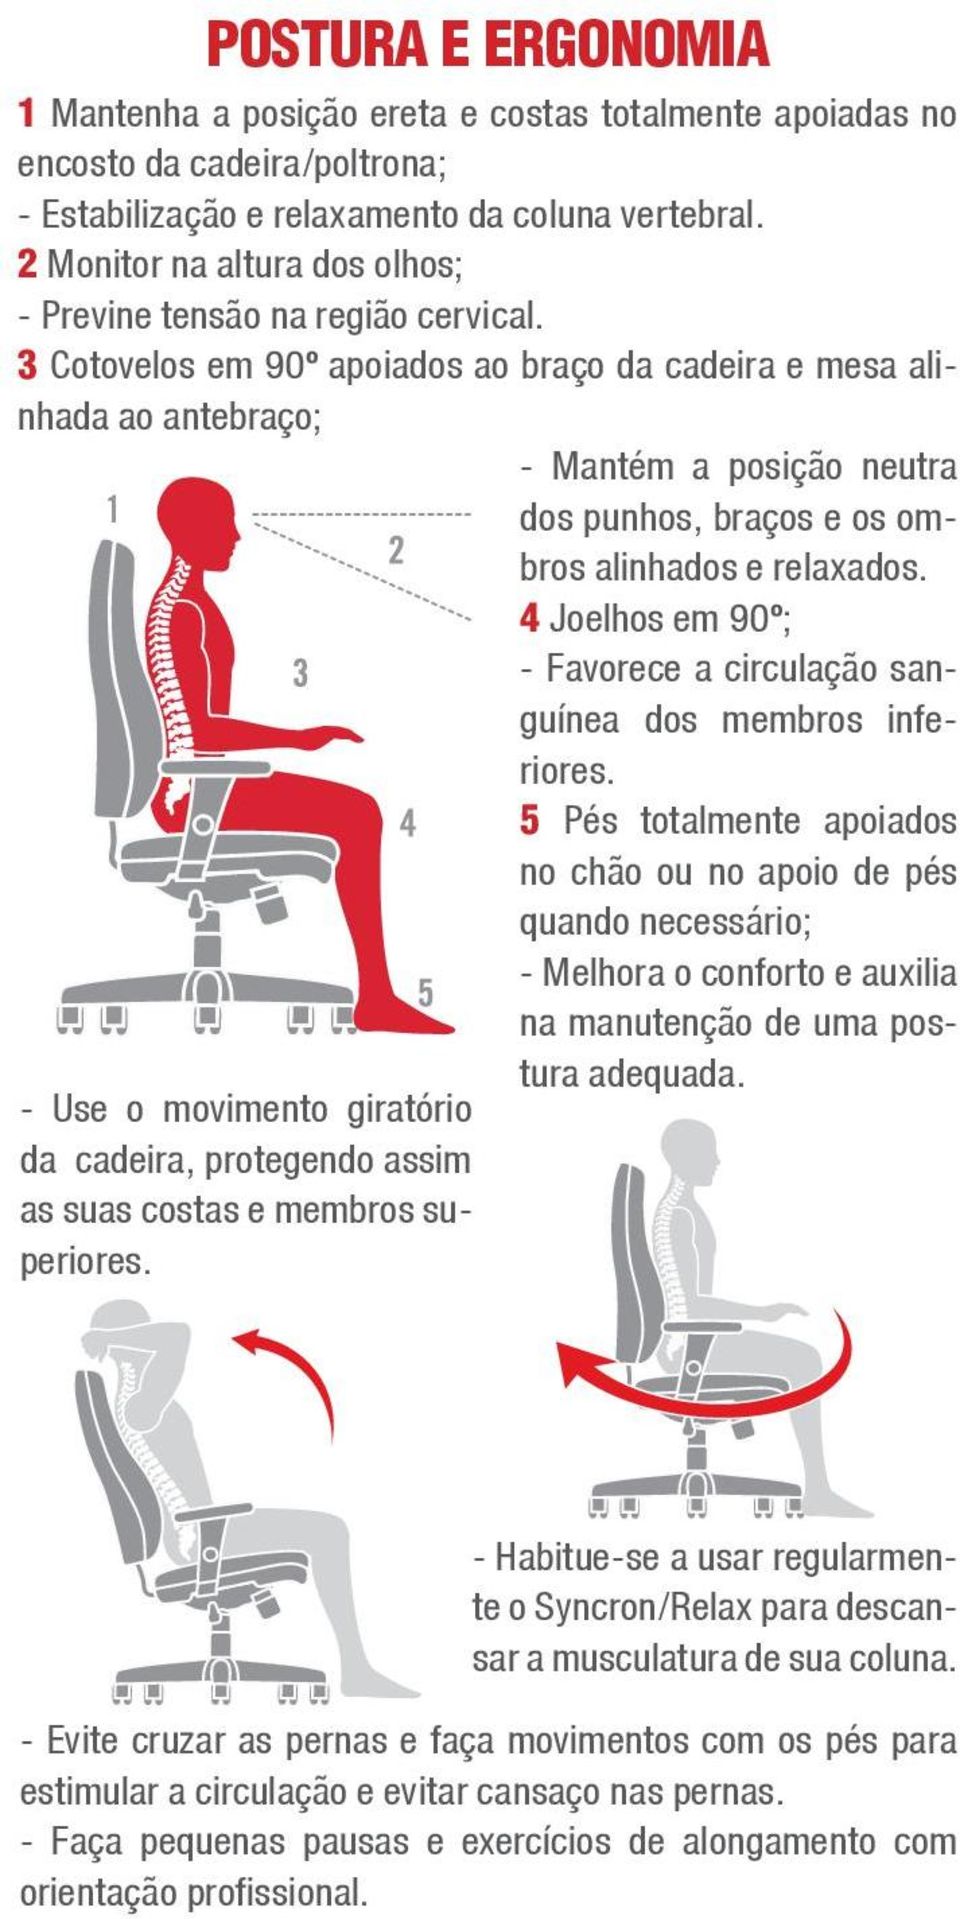 3 Cotovelos em 90º apoiados ao braço da cadeira e mesa alinhada ao antebraço; 1 - Use o movimento giratório da cadeira, protegendo assim as suas costas e membros superiores.